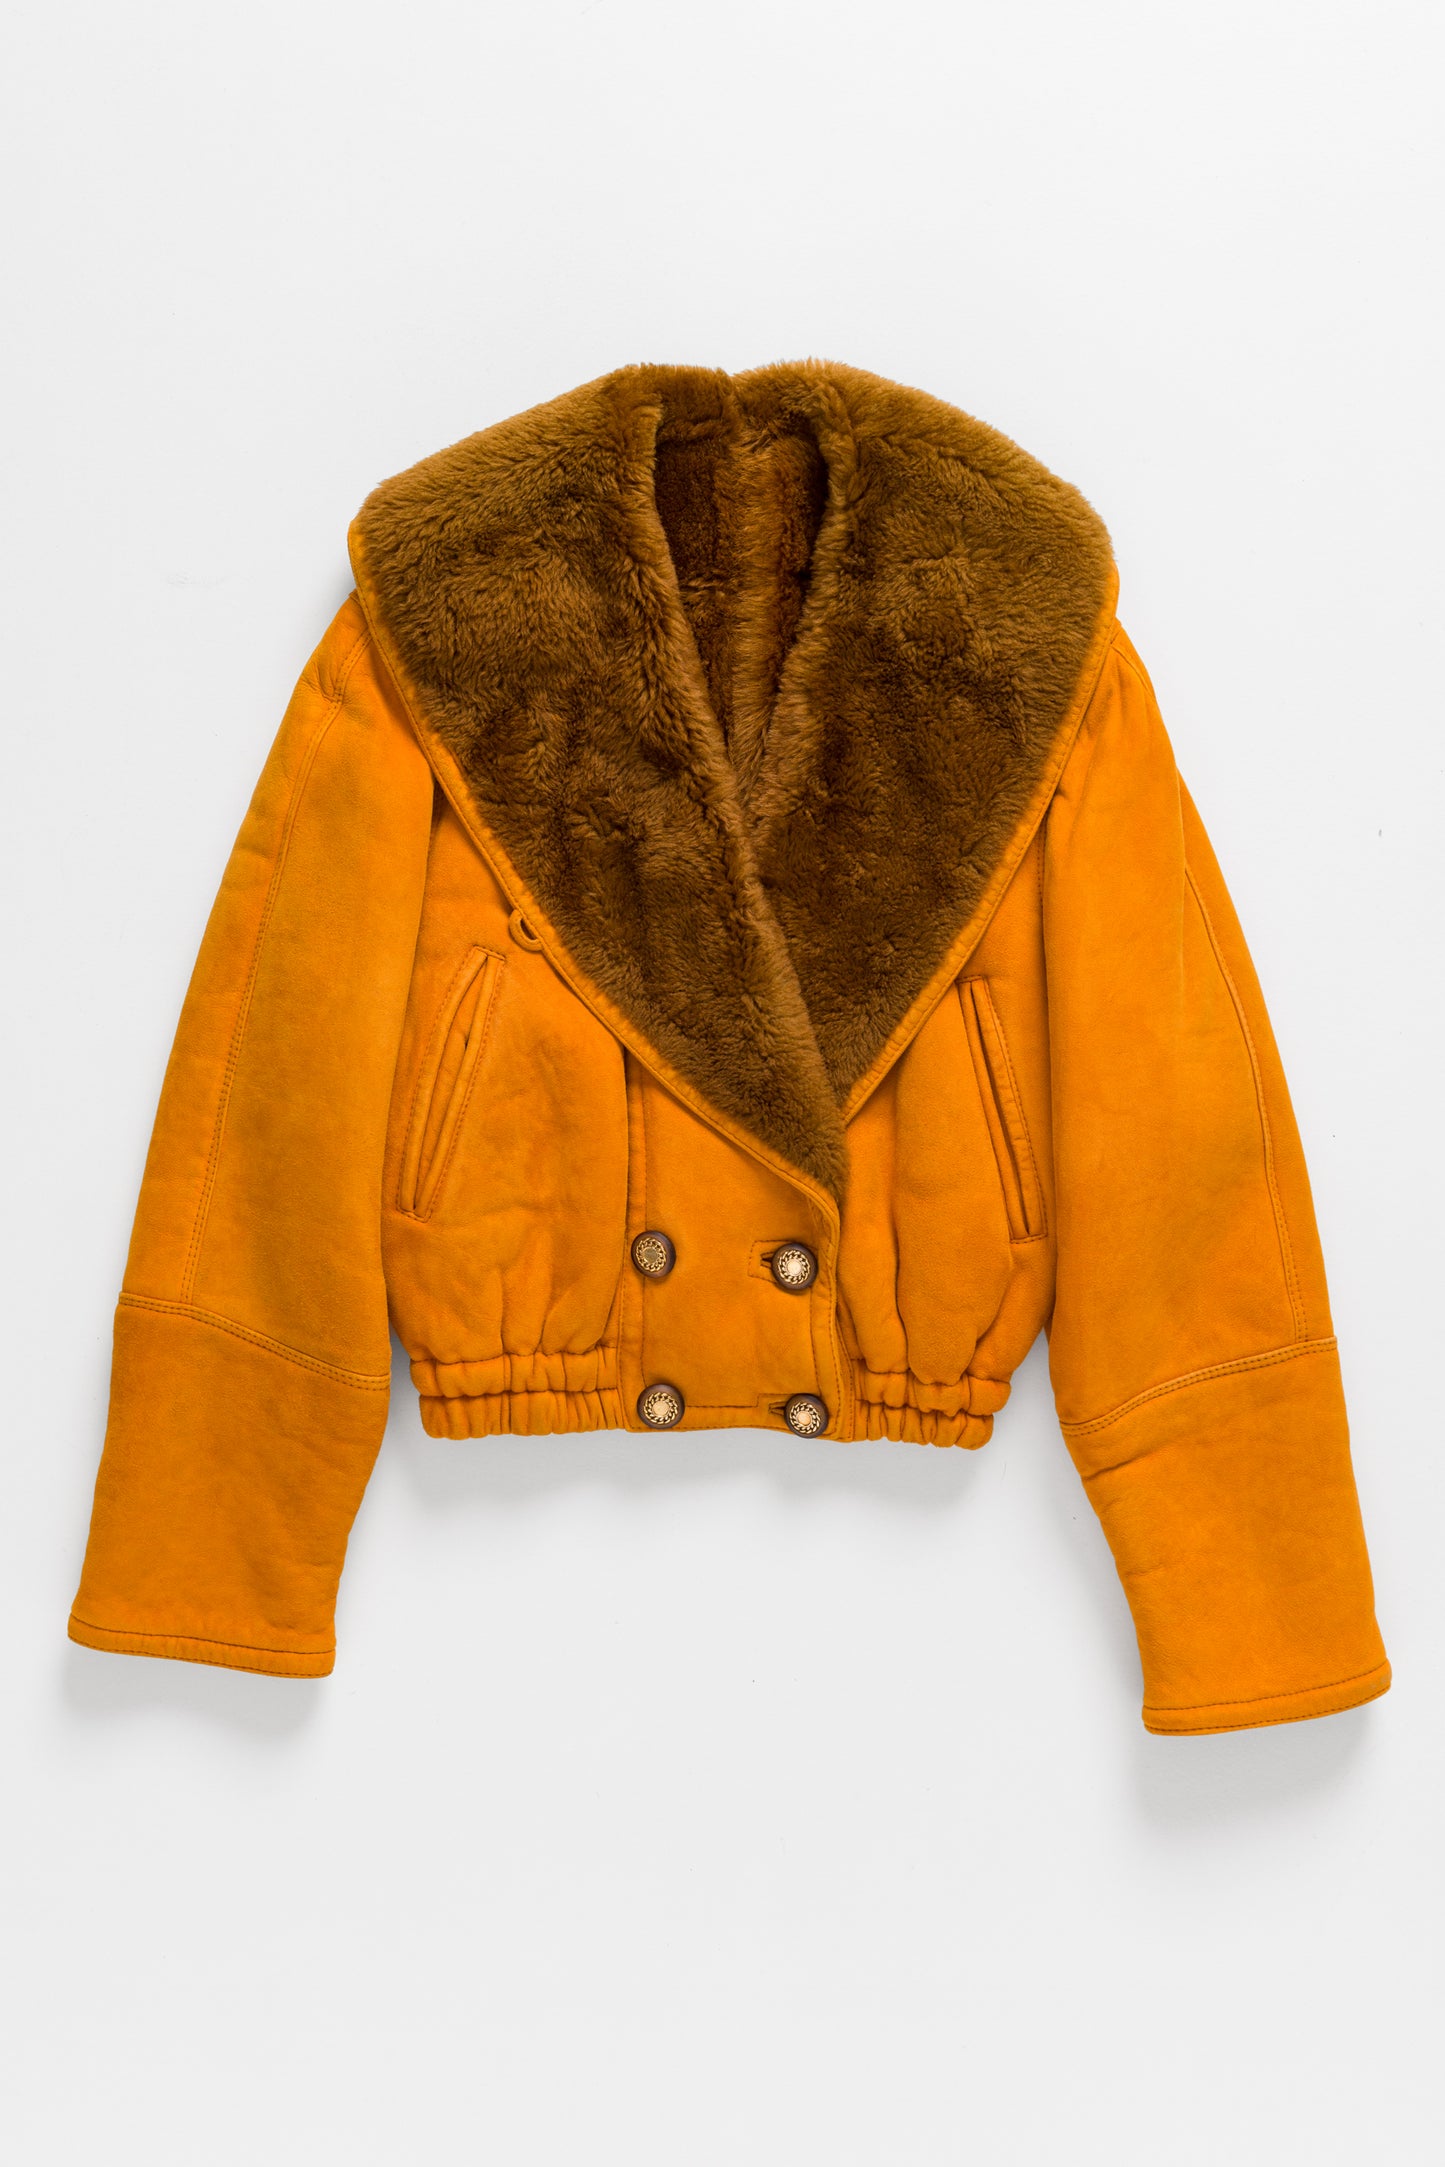 orange women’s winter jacket